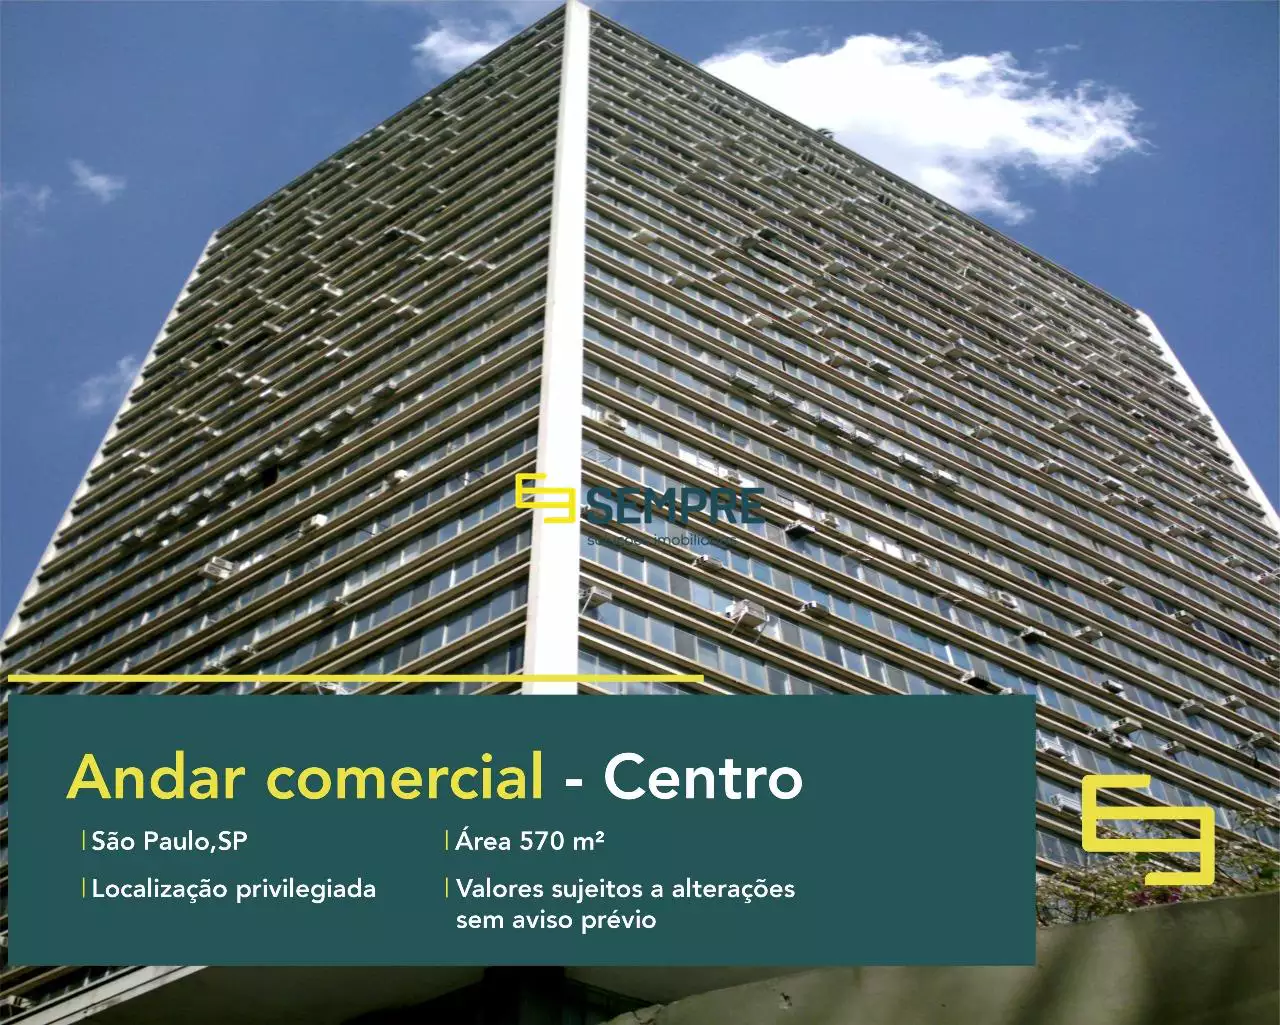 Andar comercial no Edifício Conde Prates para locação em SP, excelente localização. O estabelecimento comercial conta com área de 570 m².